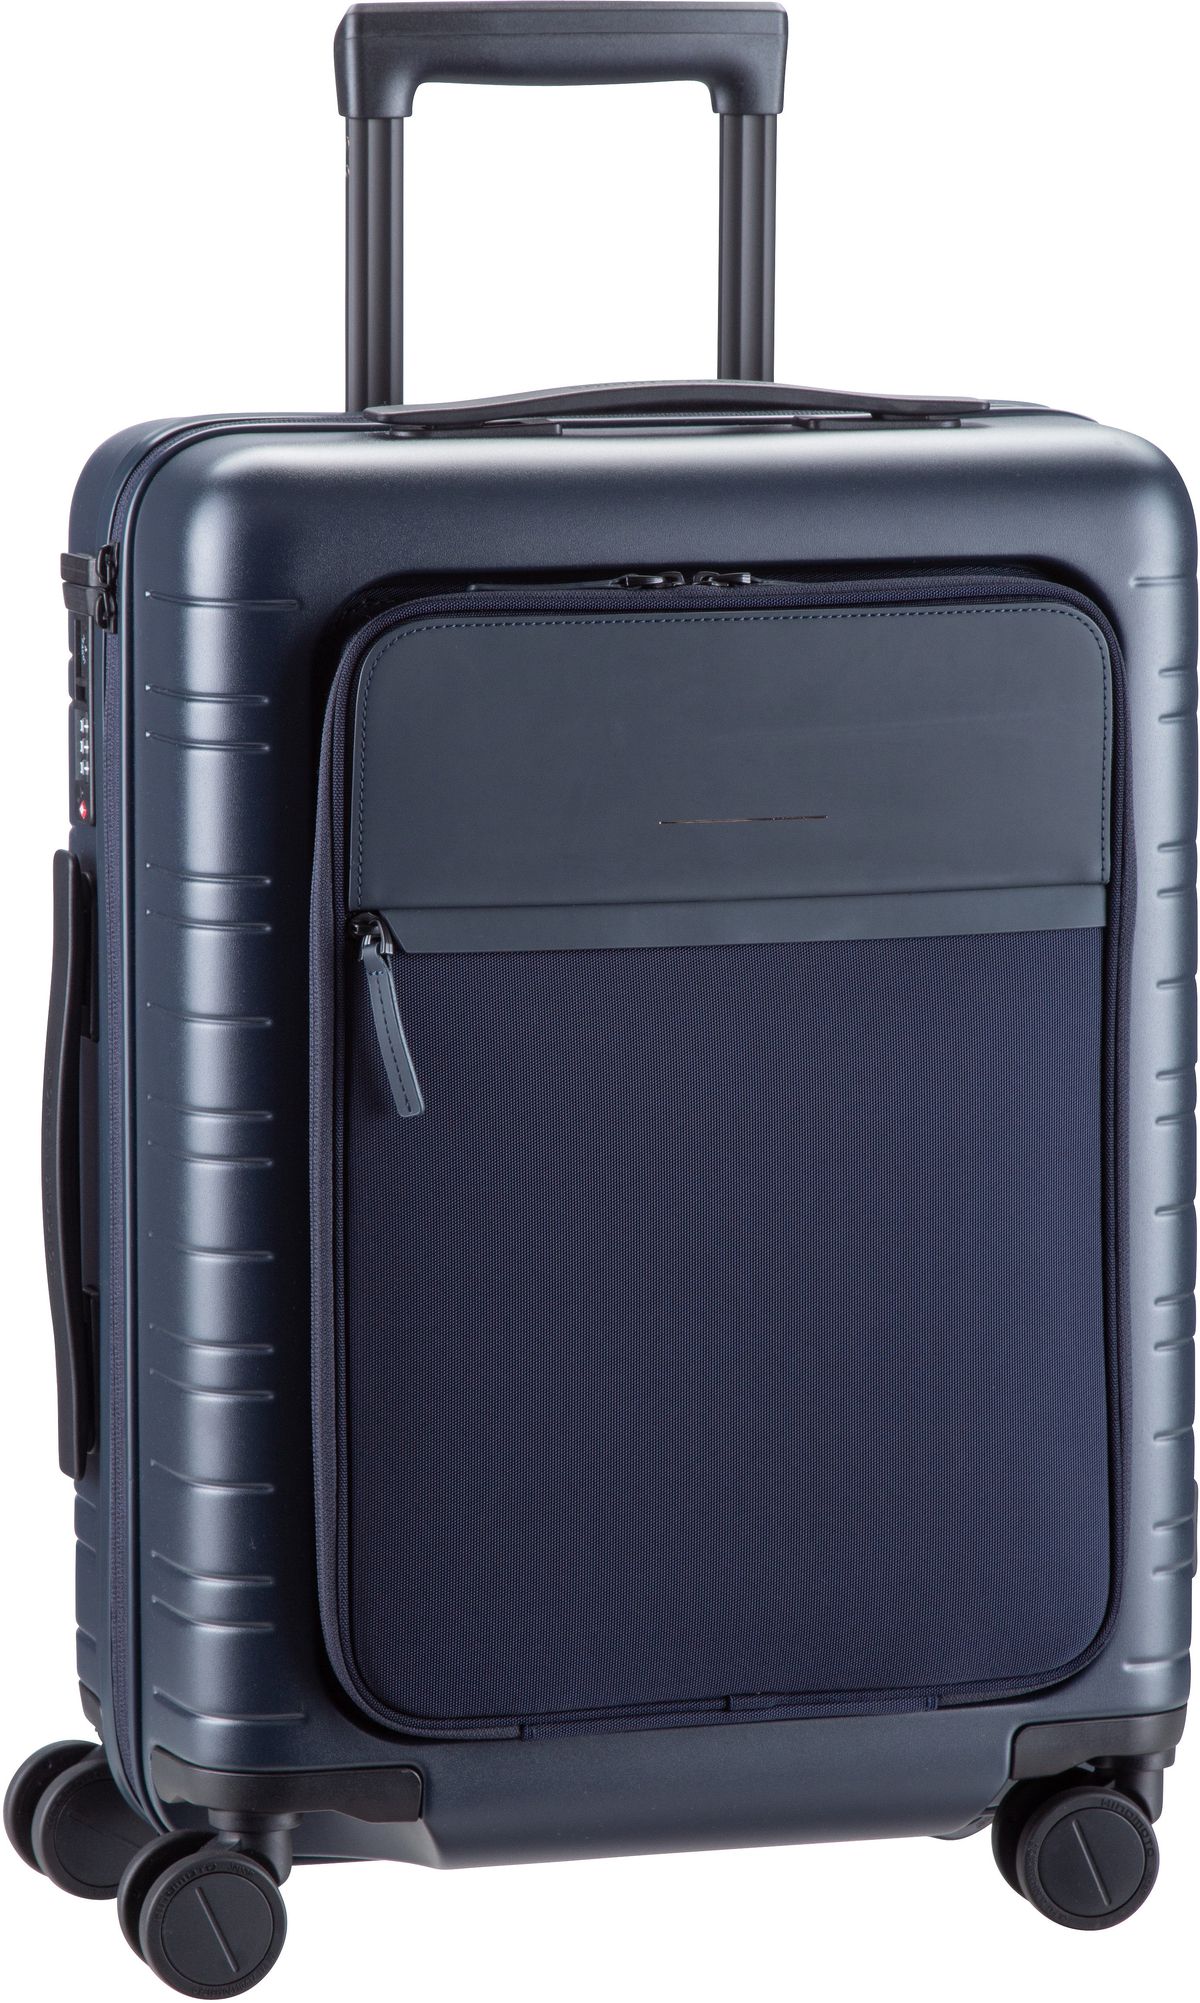 Horizn Studios  M5 Smart Cabin Luggage - Koffer mit 4 Rollen - Navy (Night Blue)